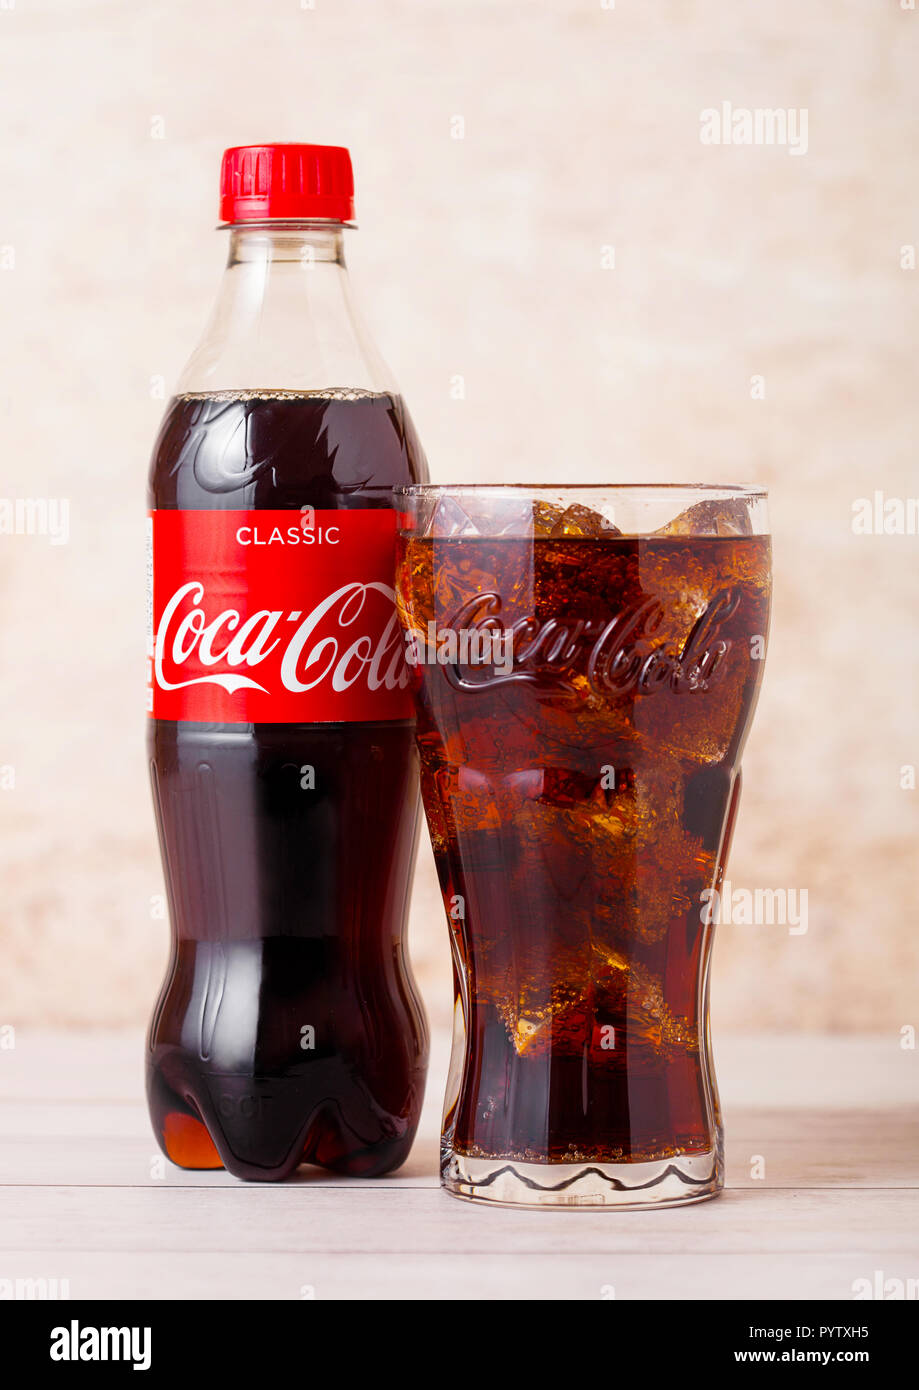 LONDON, UK - August 03, 2018: Plastikflasche und original Glas Original Coca Cola Erfrischungsgetränke auf Holz. Beliebteste Getränk in der Welt. Stockfoto